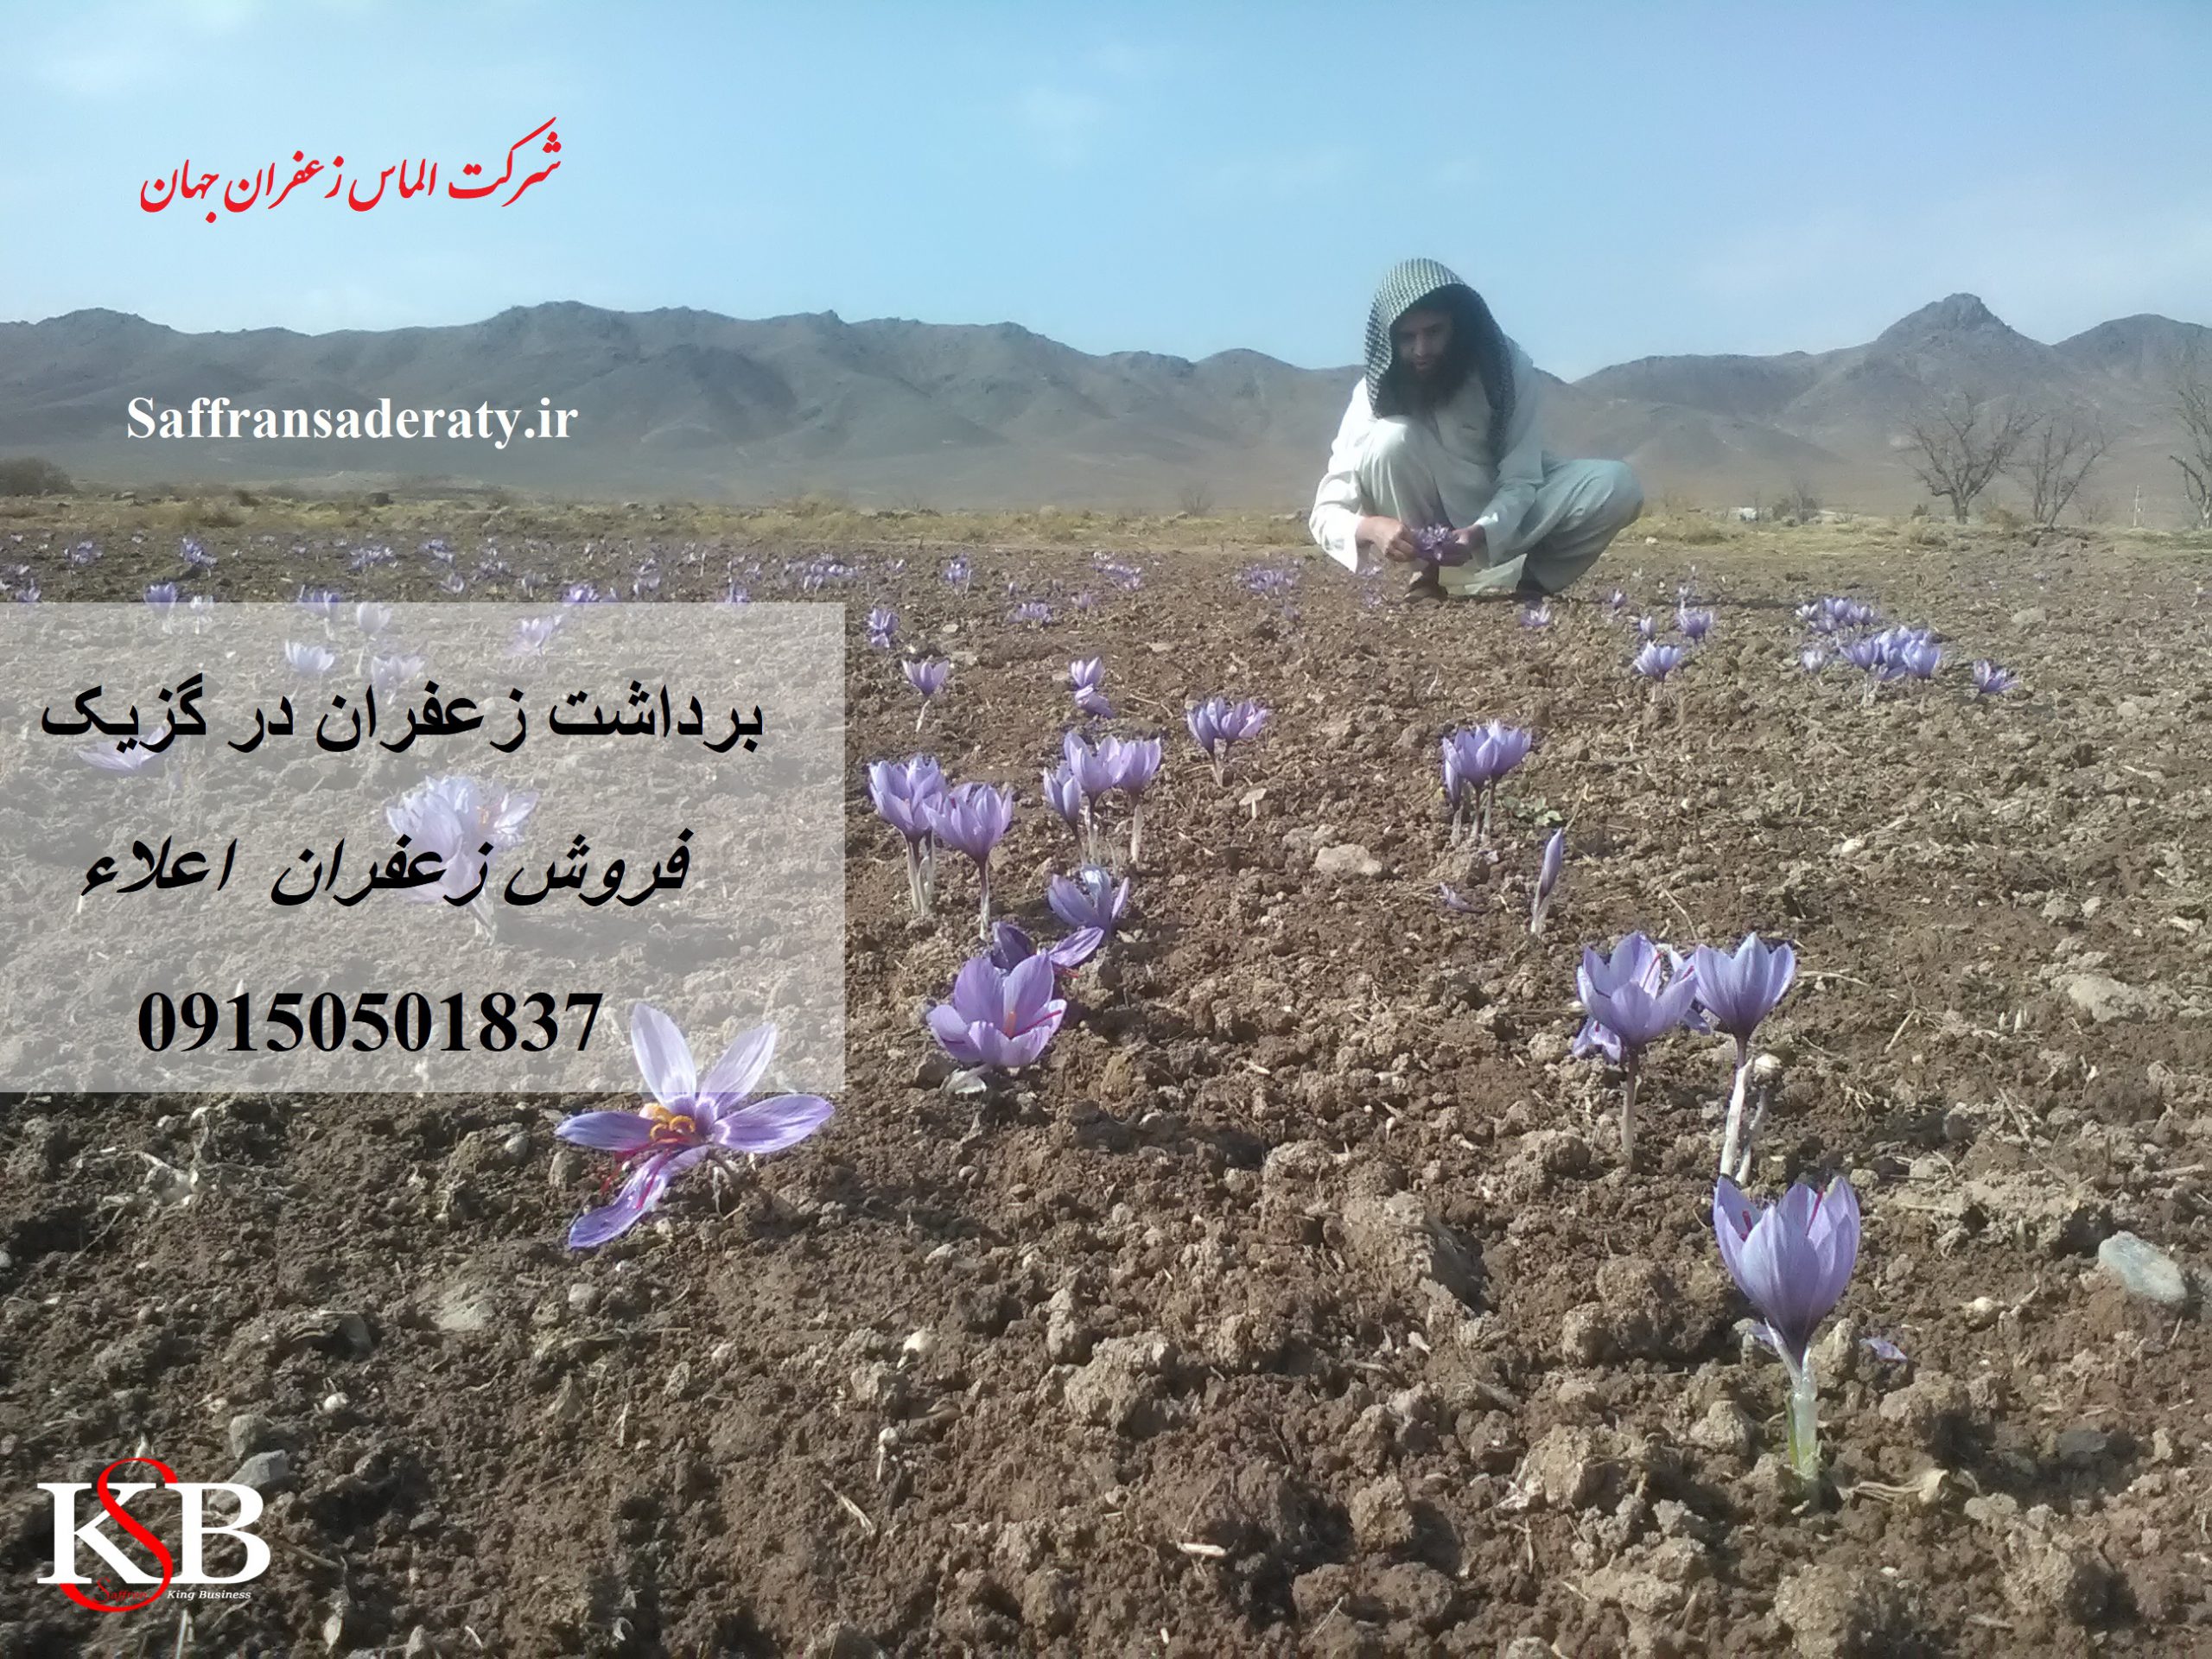 قیمت روز زعفران منطقه گزیک